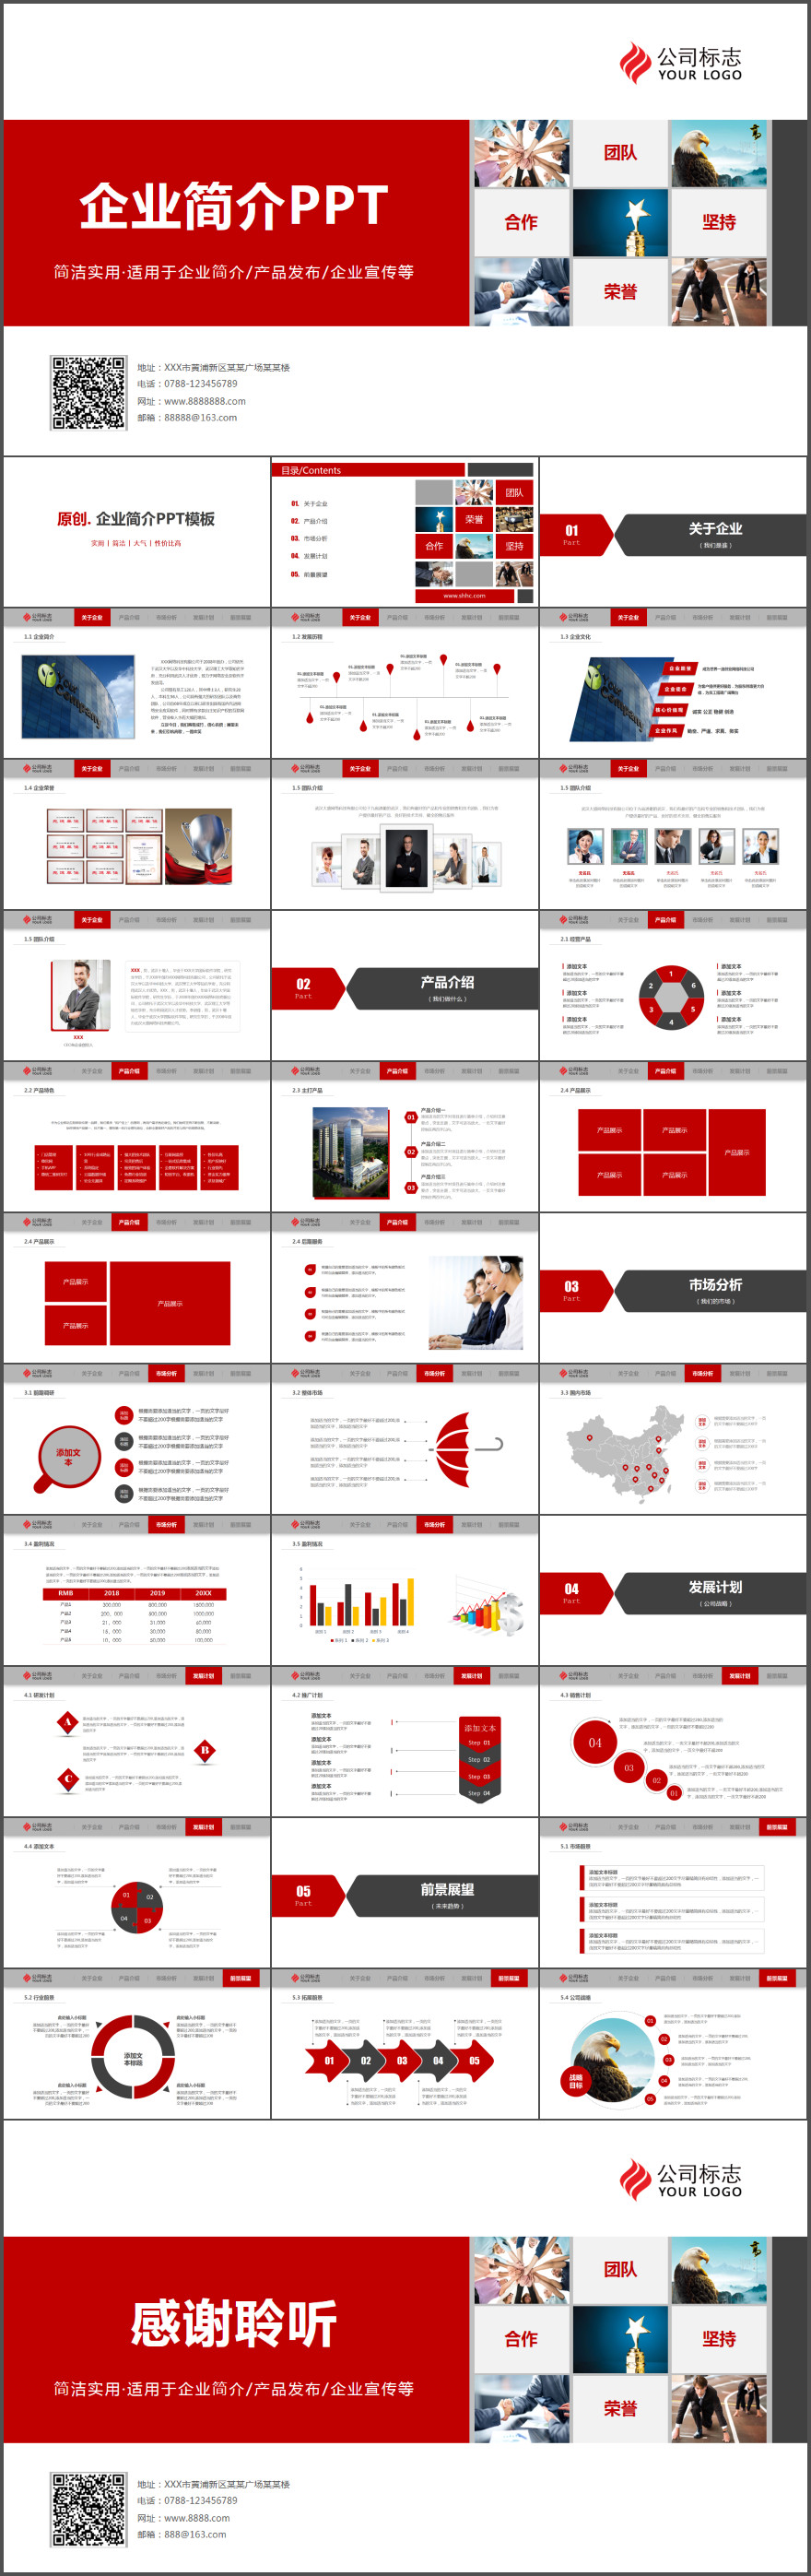 红色大气企业宣传产品介绍动态PPT模板